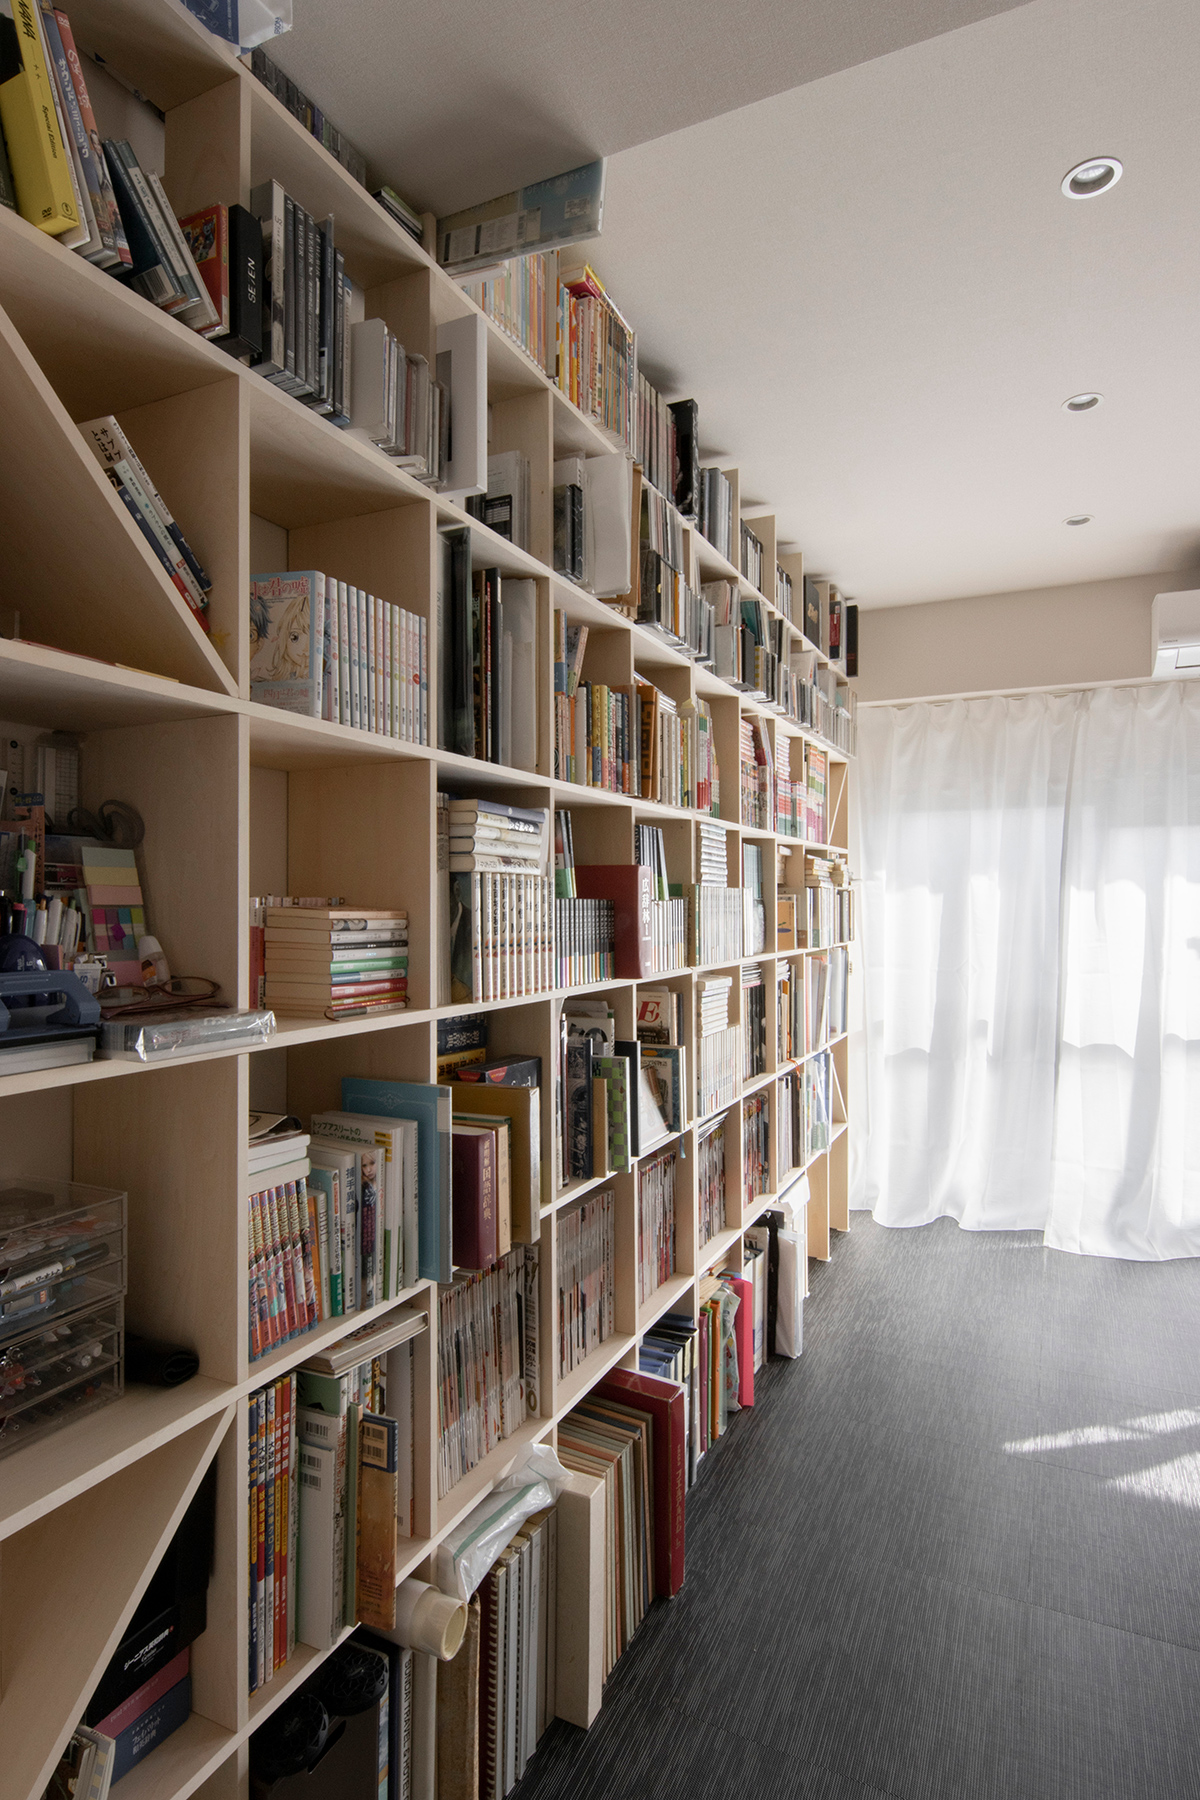 本棚に合わせて生活空間をリフォーム
天井まで壁一面の壁面収納